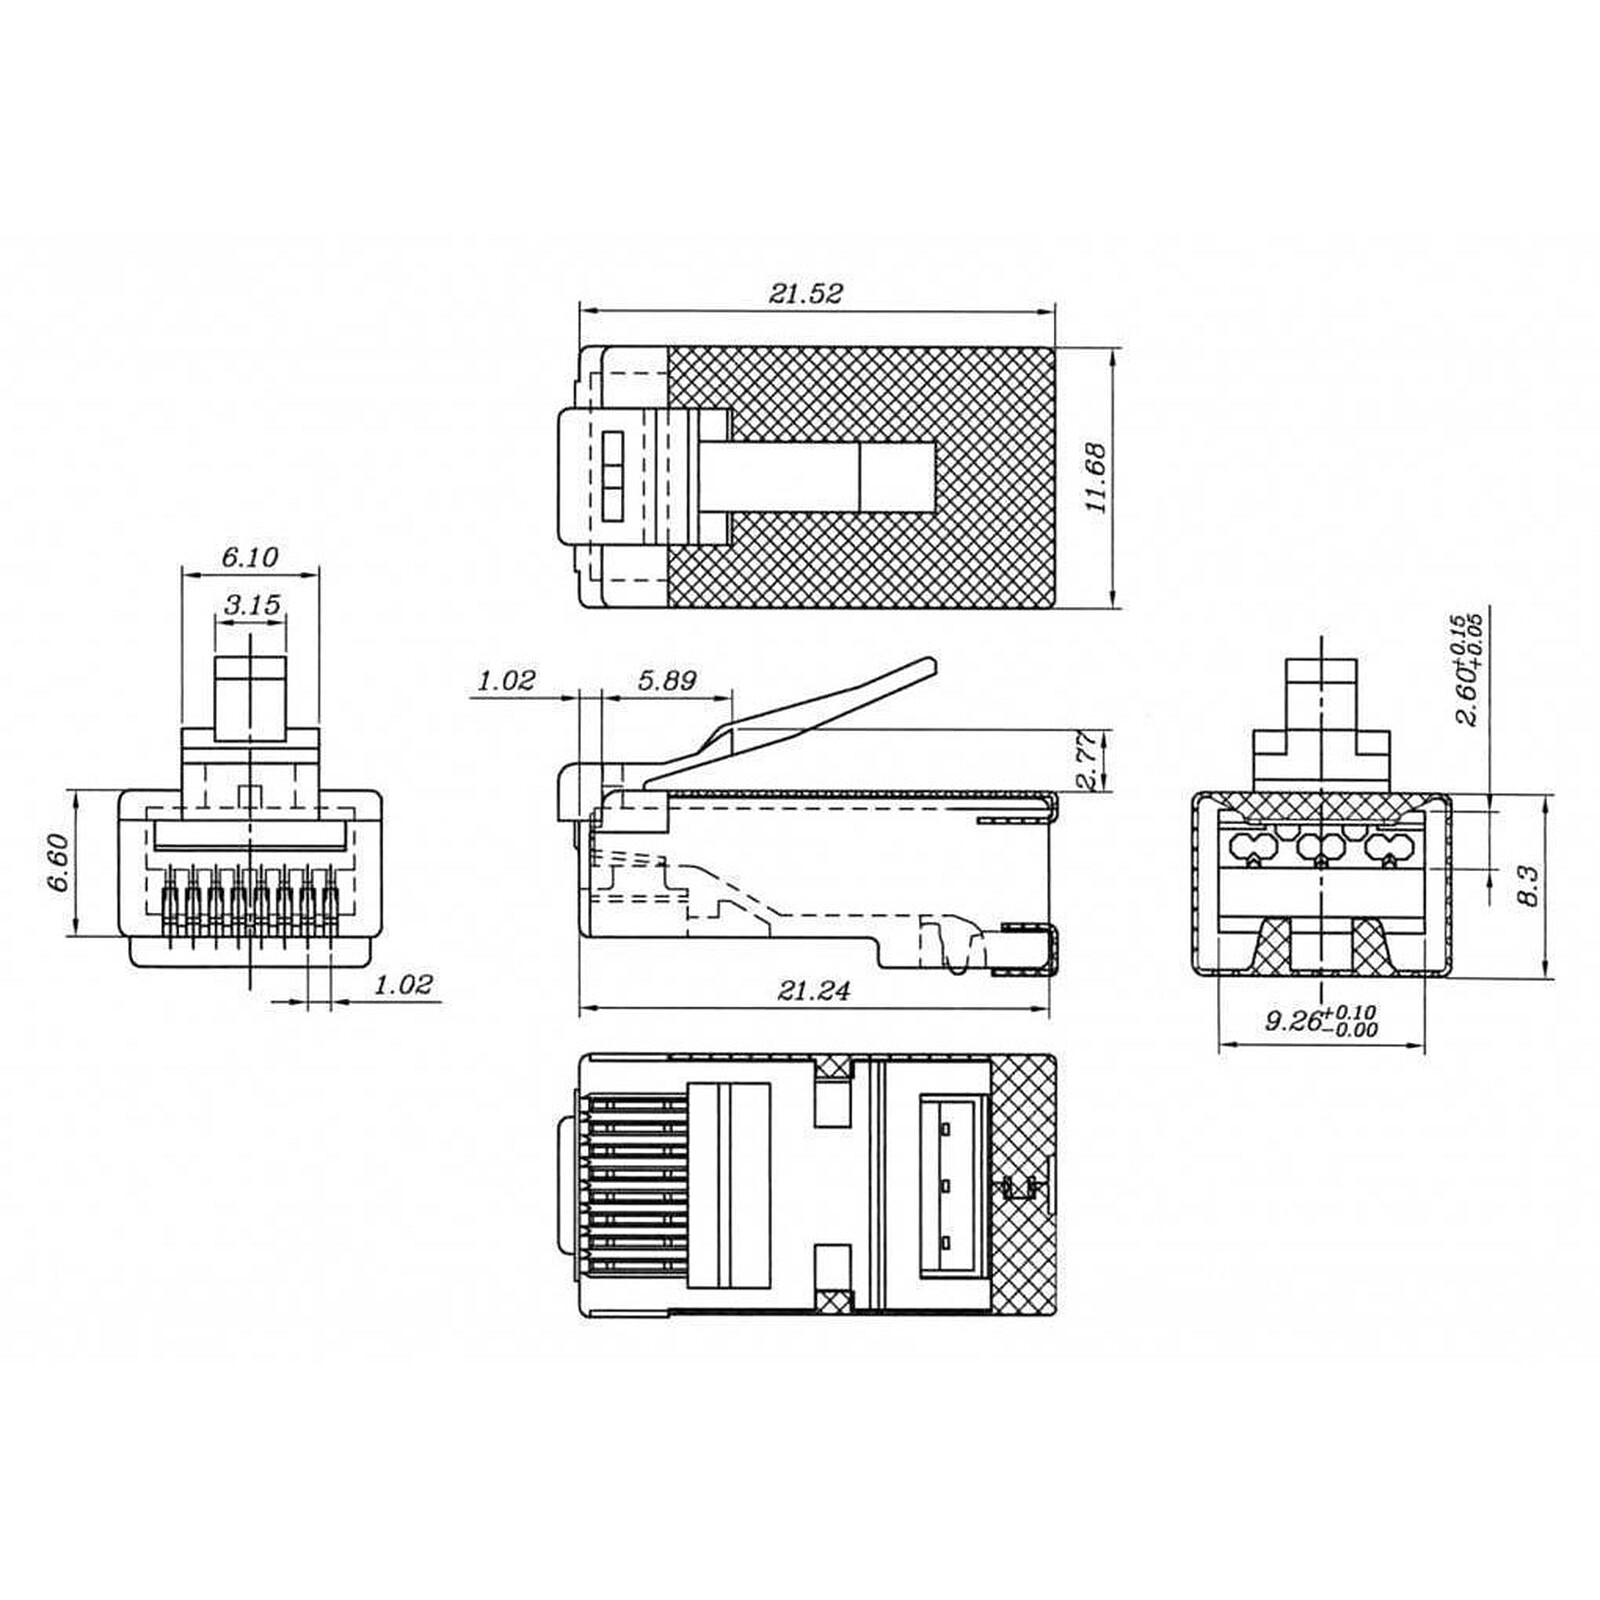 Eclateur de paires RJ45 catégorie 5e STP Mâle/Femelle-Femelle (câble 15 cm)  - Connectique RJ45 - Garantie 3 ans LDLC